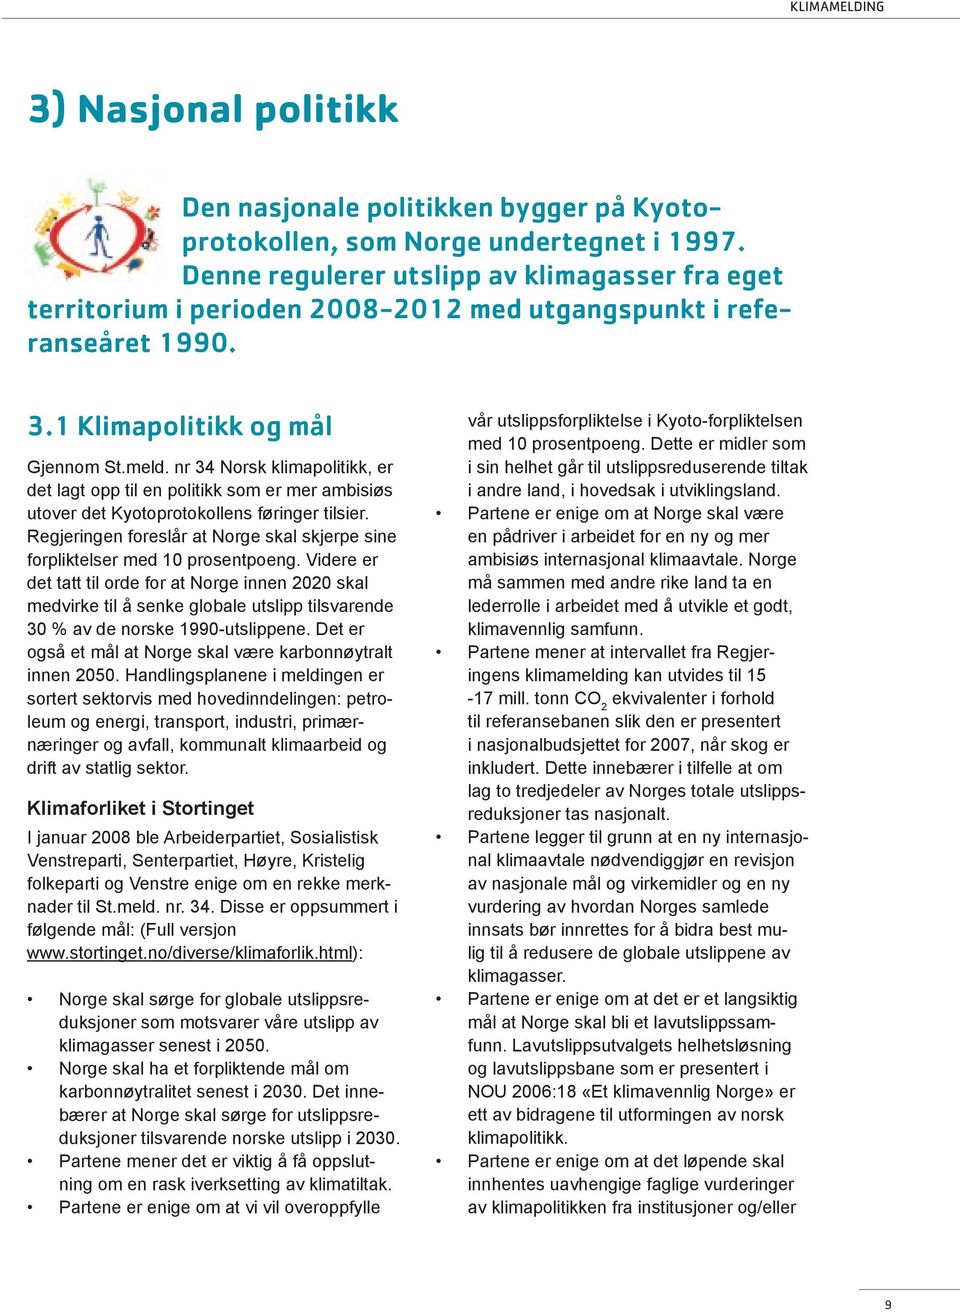 nr 34 Norsk klimapolitikk, er det lagt opp til en politikk som er mer ambisiøs utover det Kyotoprotokollens føringer tilsier.